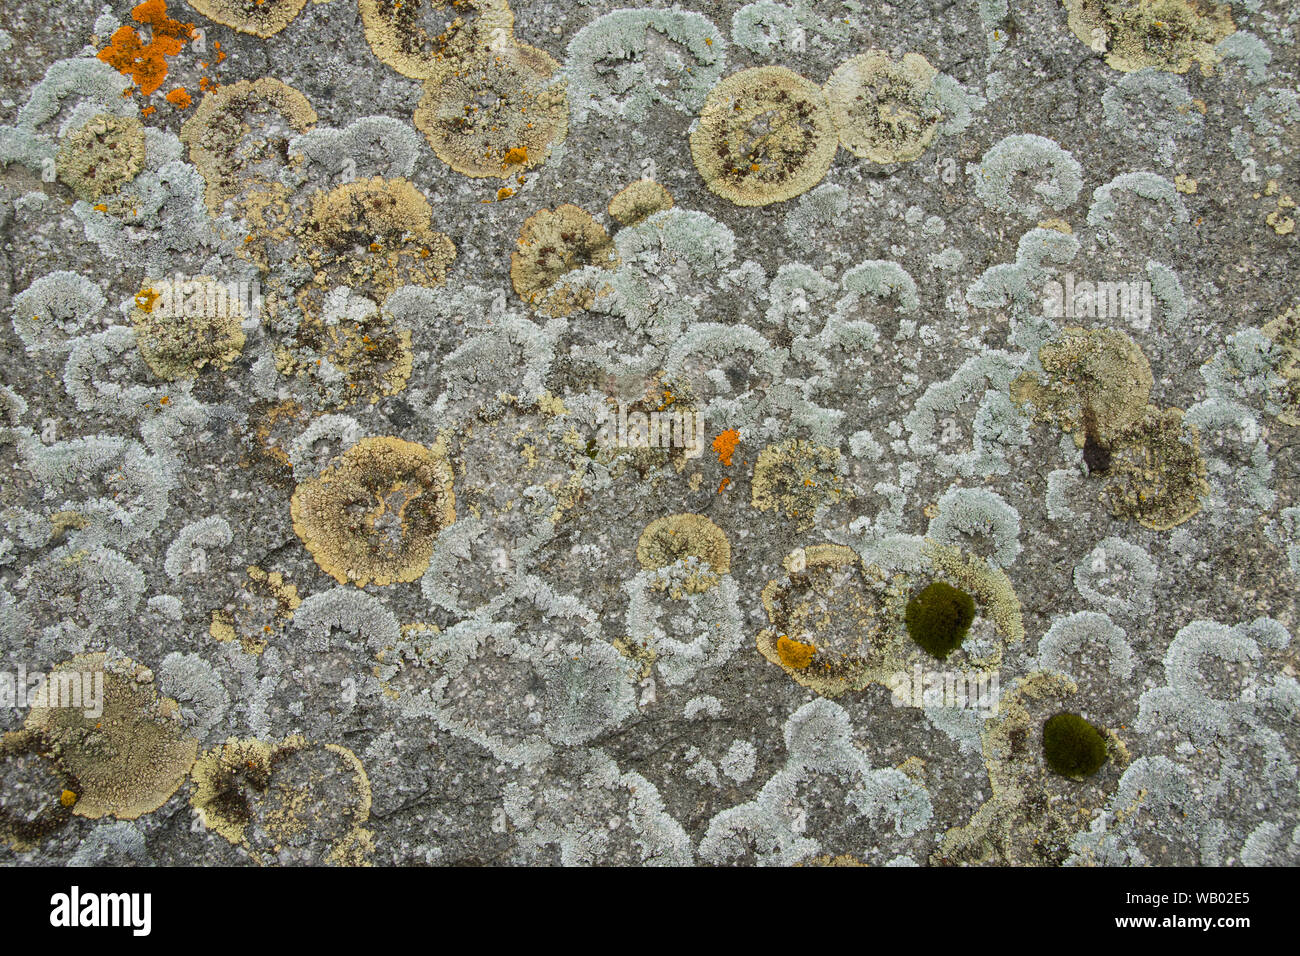 Dettaglio del lichen coperto rock, Adak Island, isole Aleutian, Alaska Foto Stock